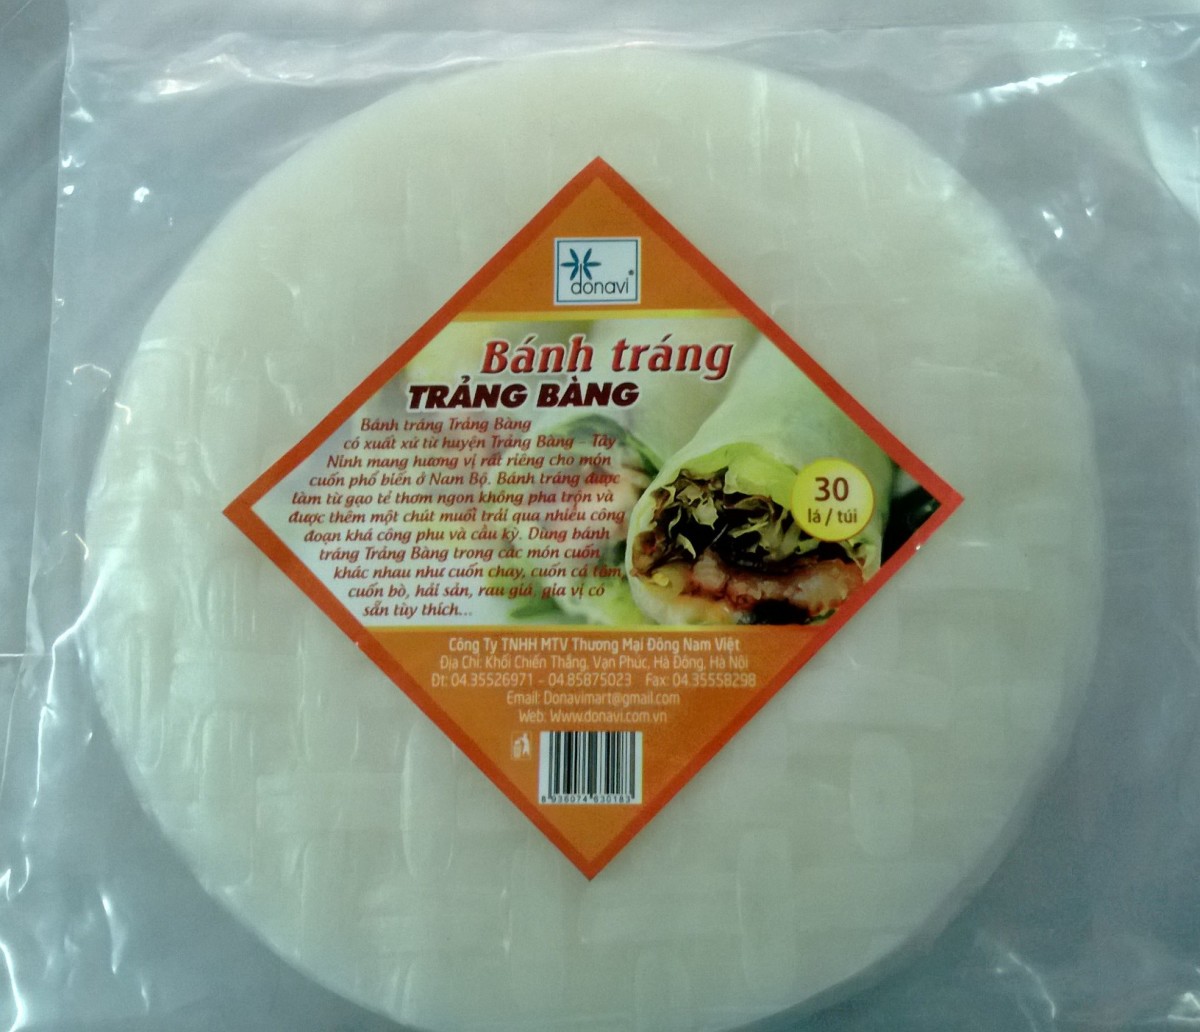 Trang Bang rice paper